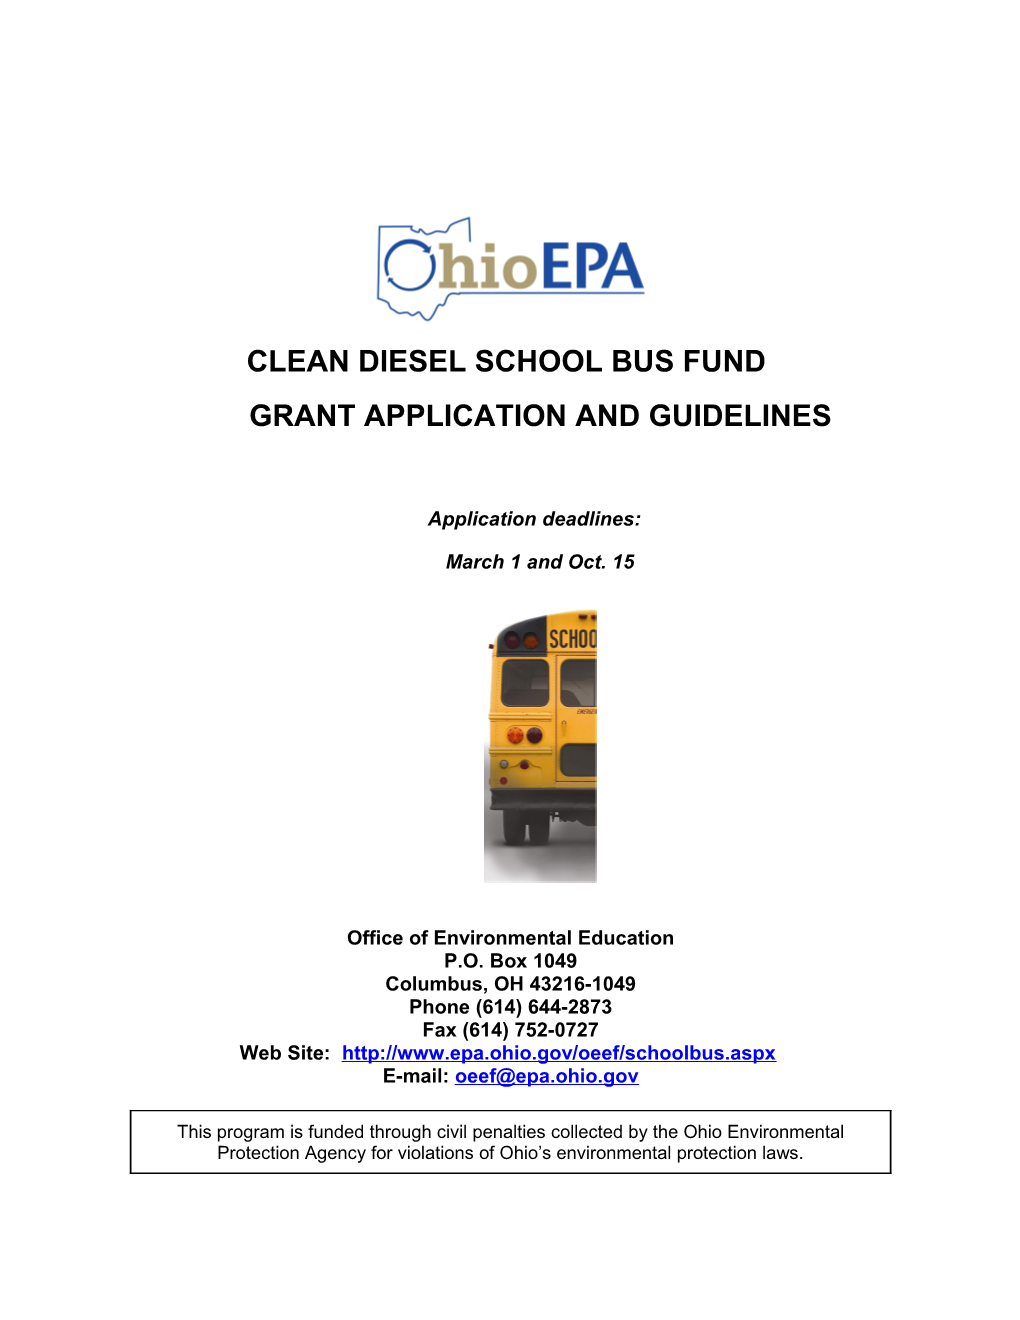 Clean Diesel School Bus Fund